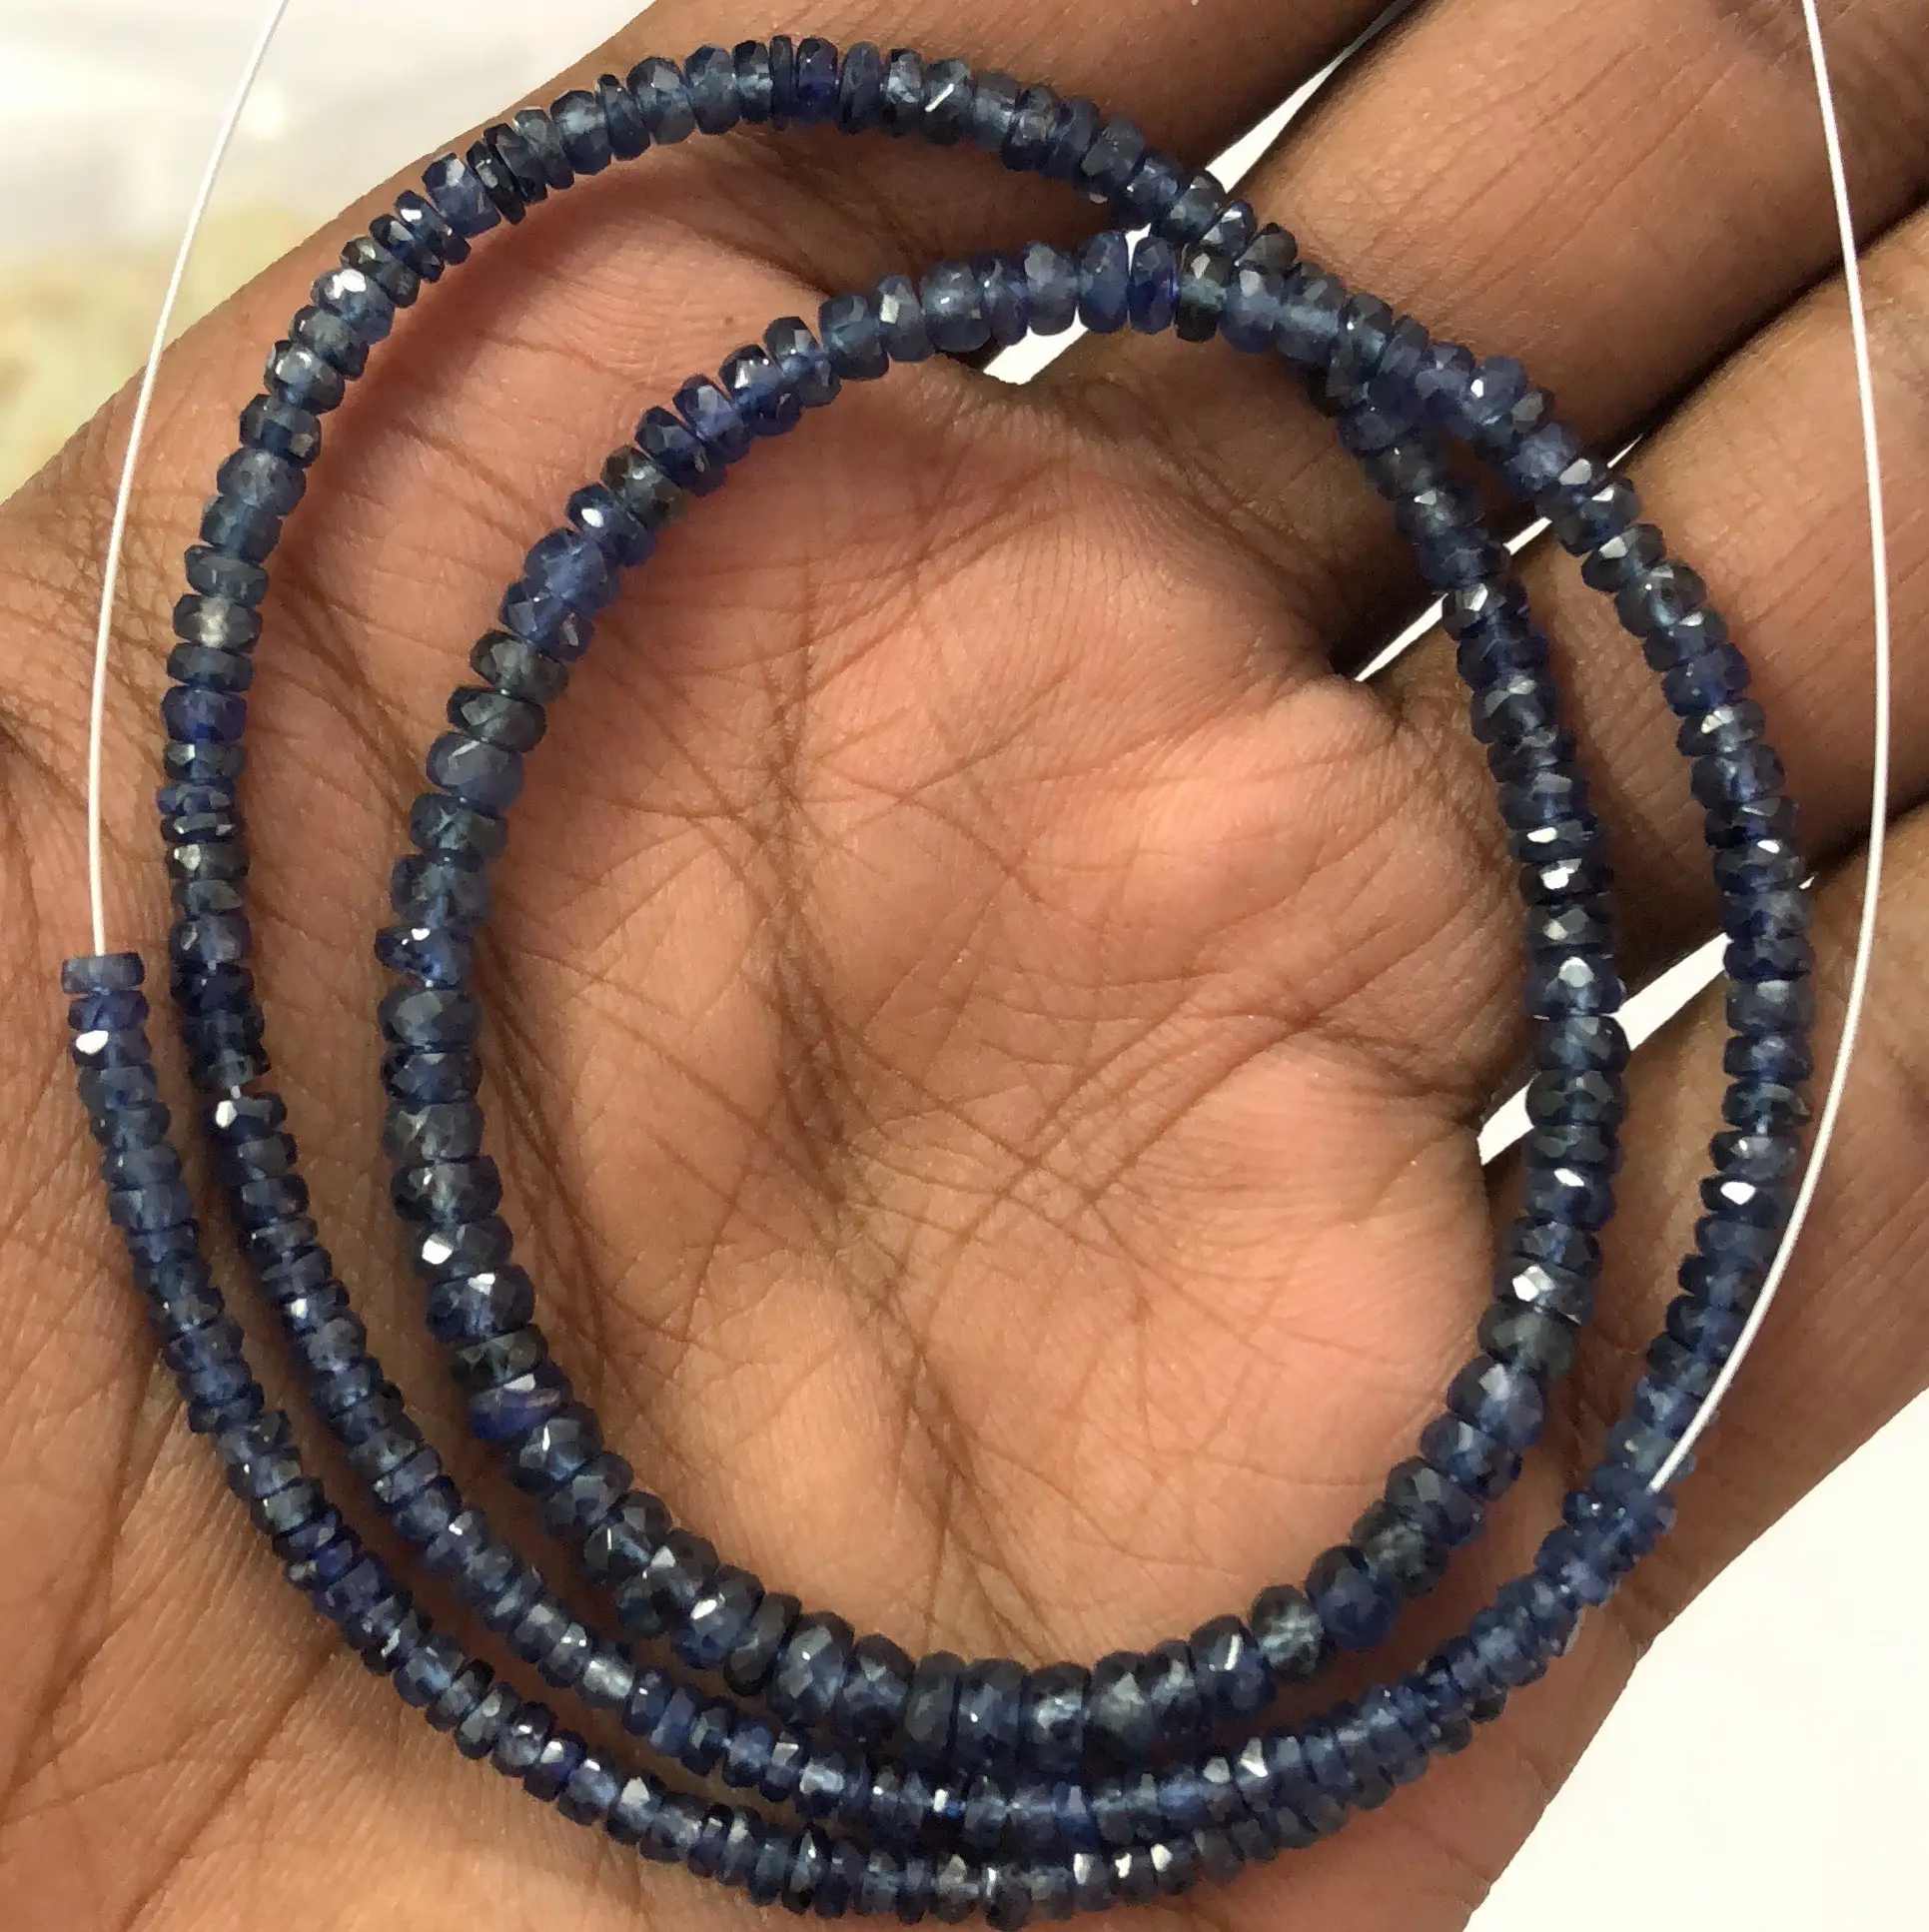 Natürlicher blauer Saphir einfarbige randelle Edelstein-Perlenstrang vom Edelstein-Hersteller zum Großhandelspreis kaufen Online-Shop